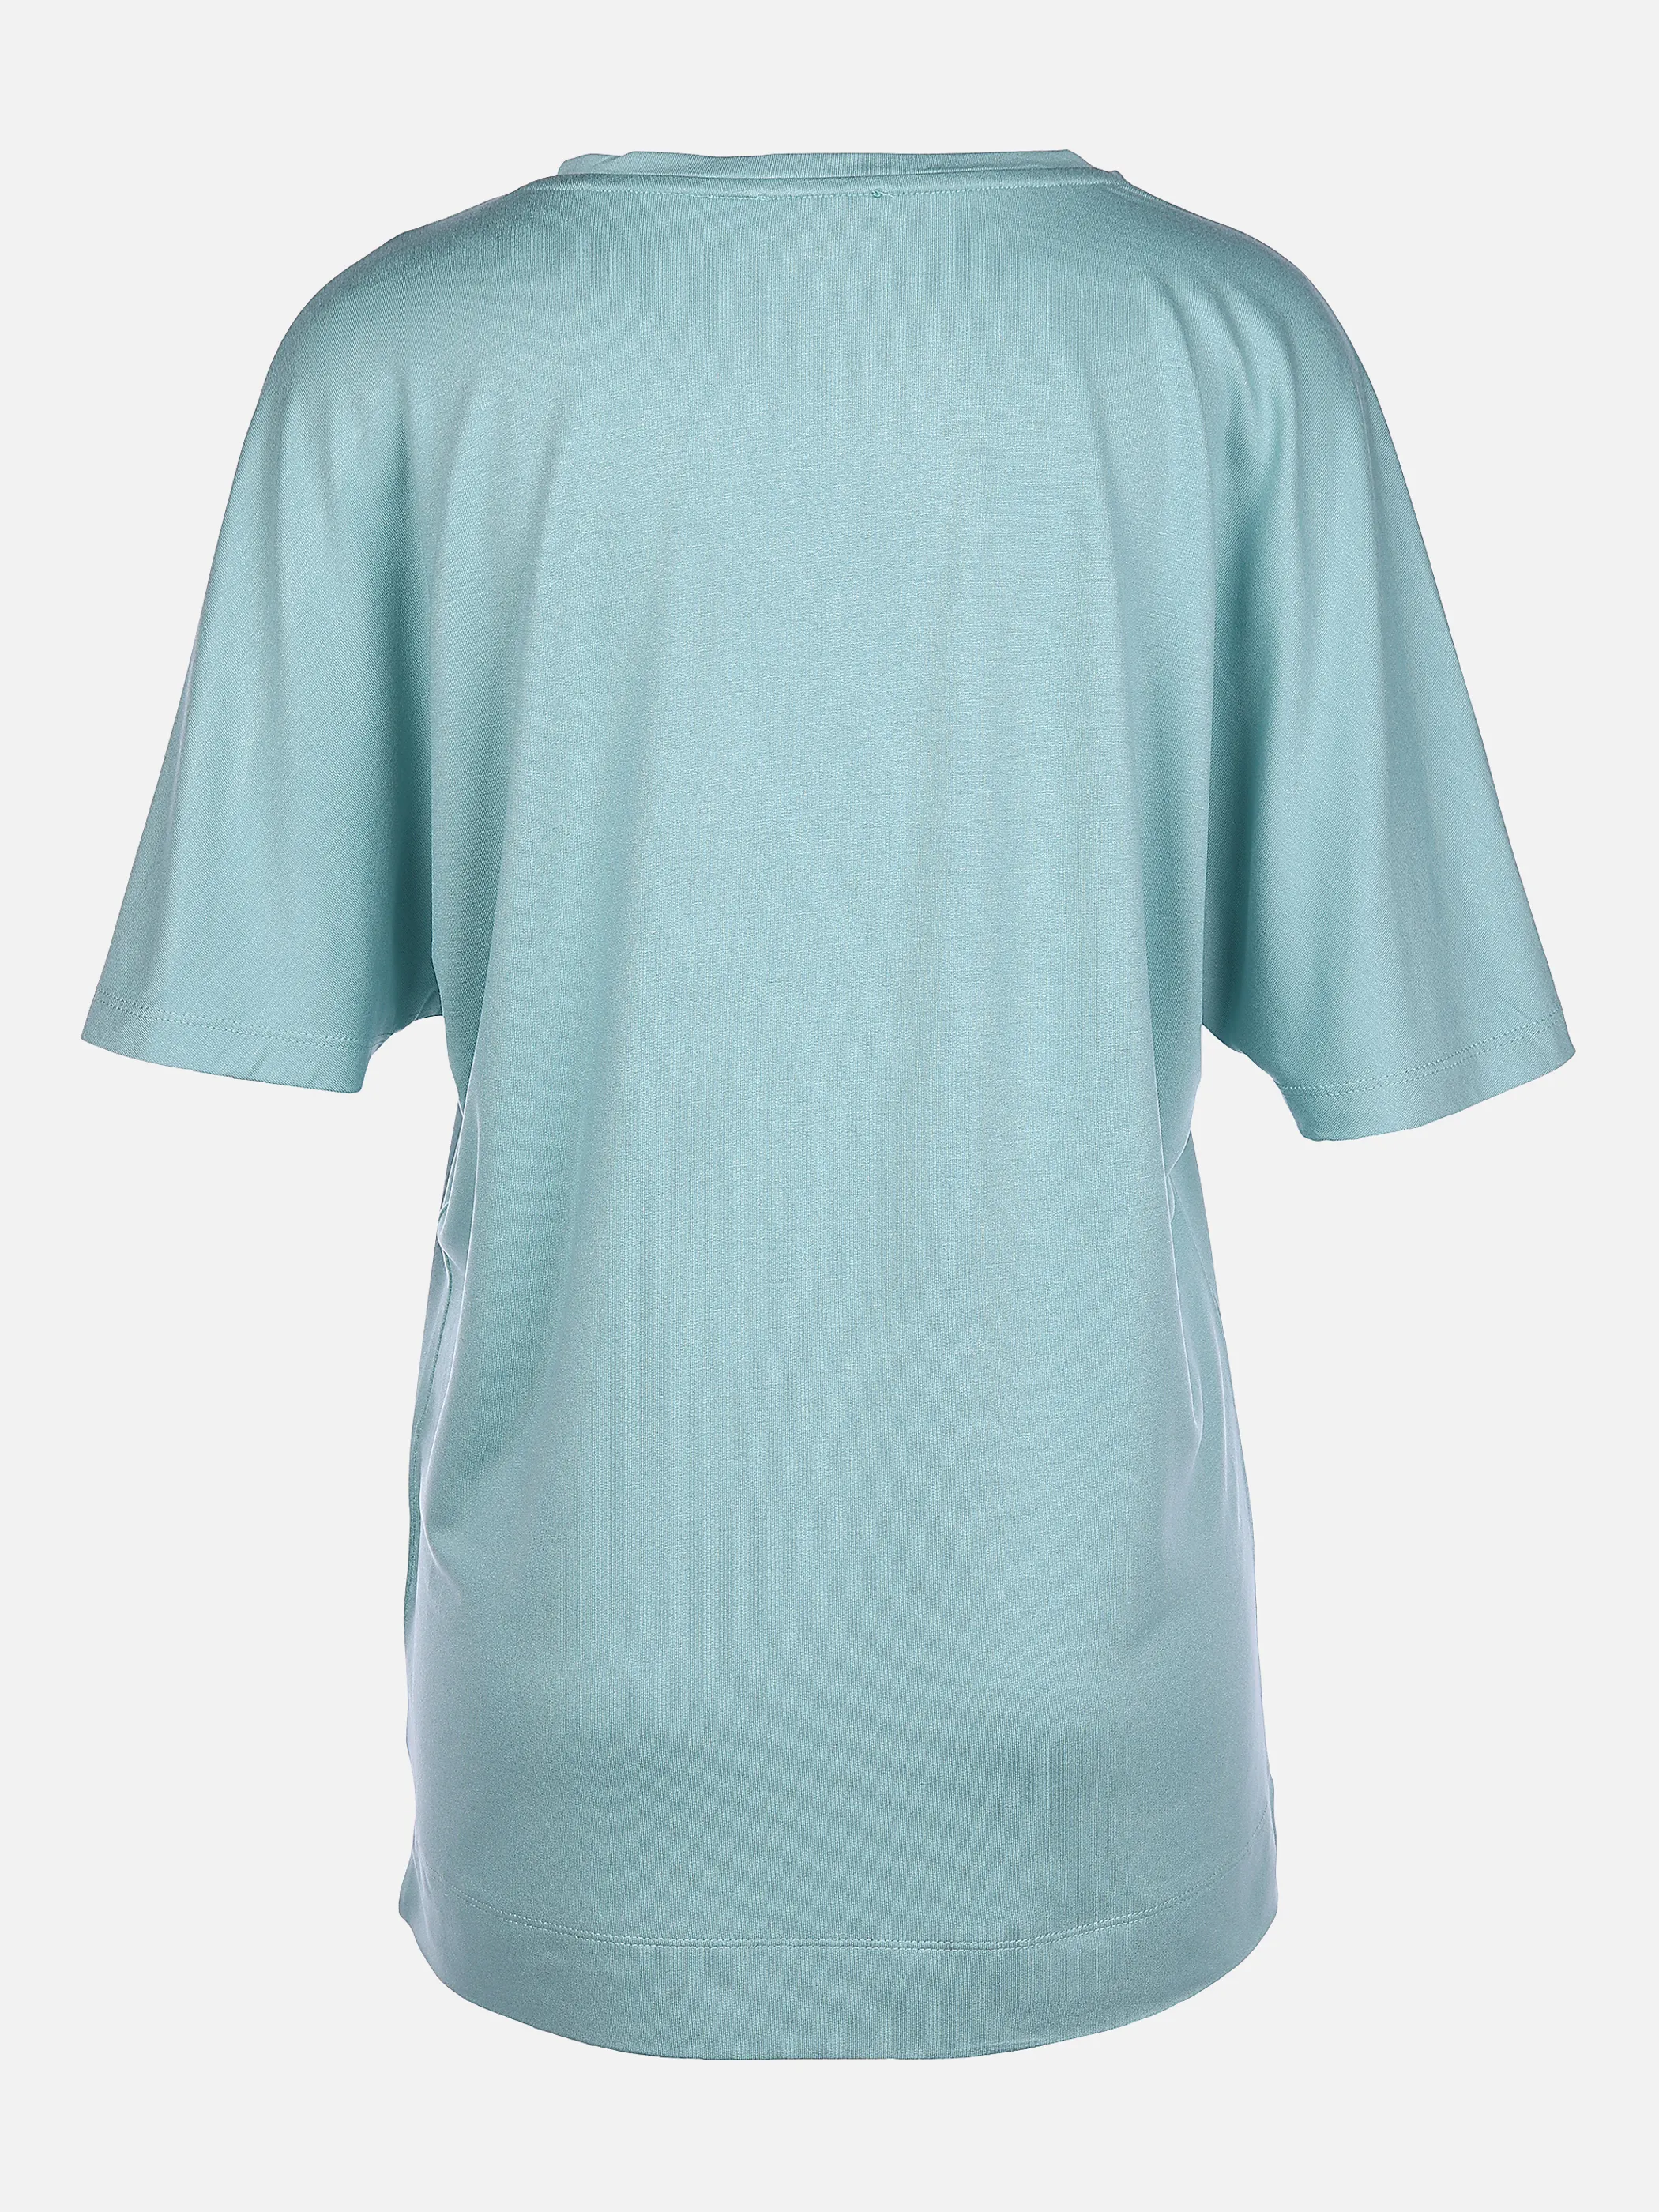 Lisa Tossa Da-T-Shirt m. V-Ausschnitt Blau 866116 AGAVE 2